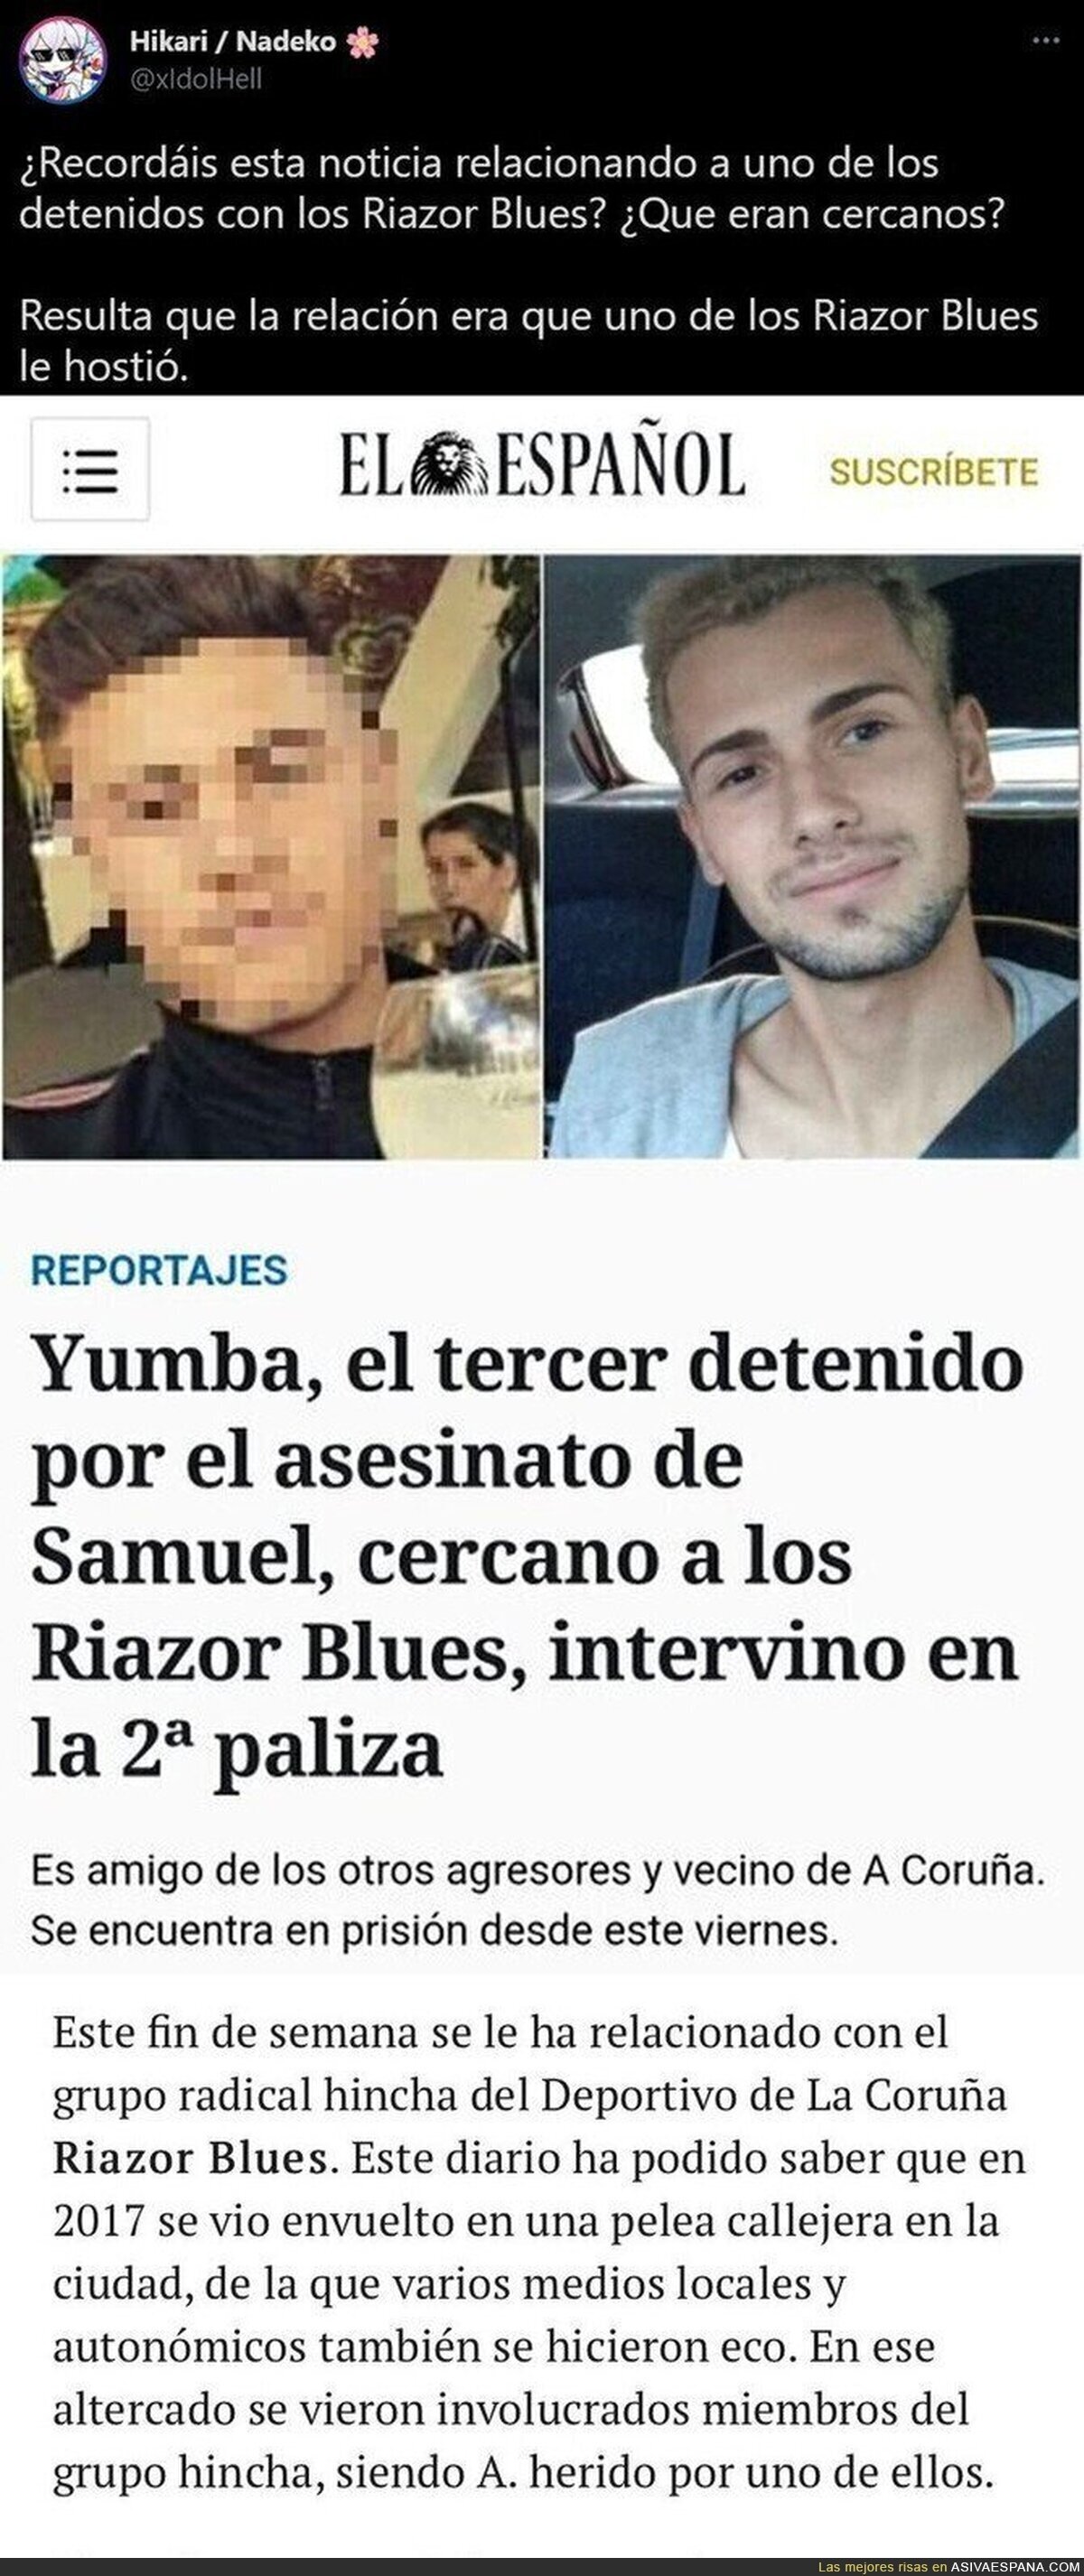 Así ha manipulado 'El Español' con el supuesto asesino de Samuel relacionándolo con los 'Riazor Blues'